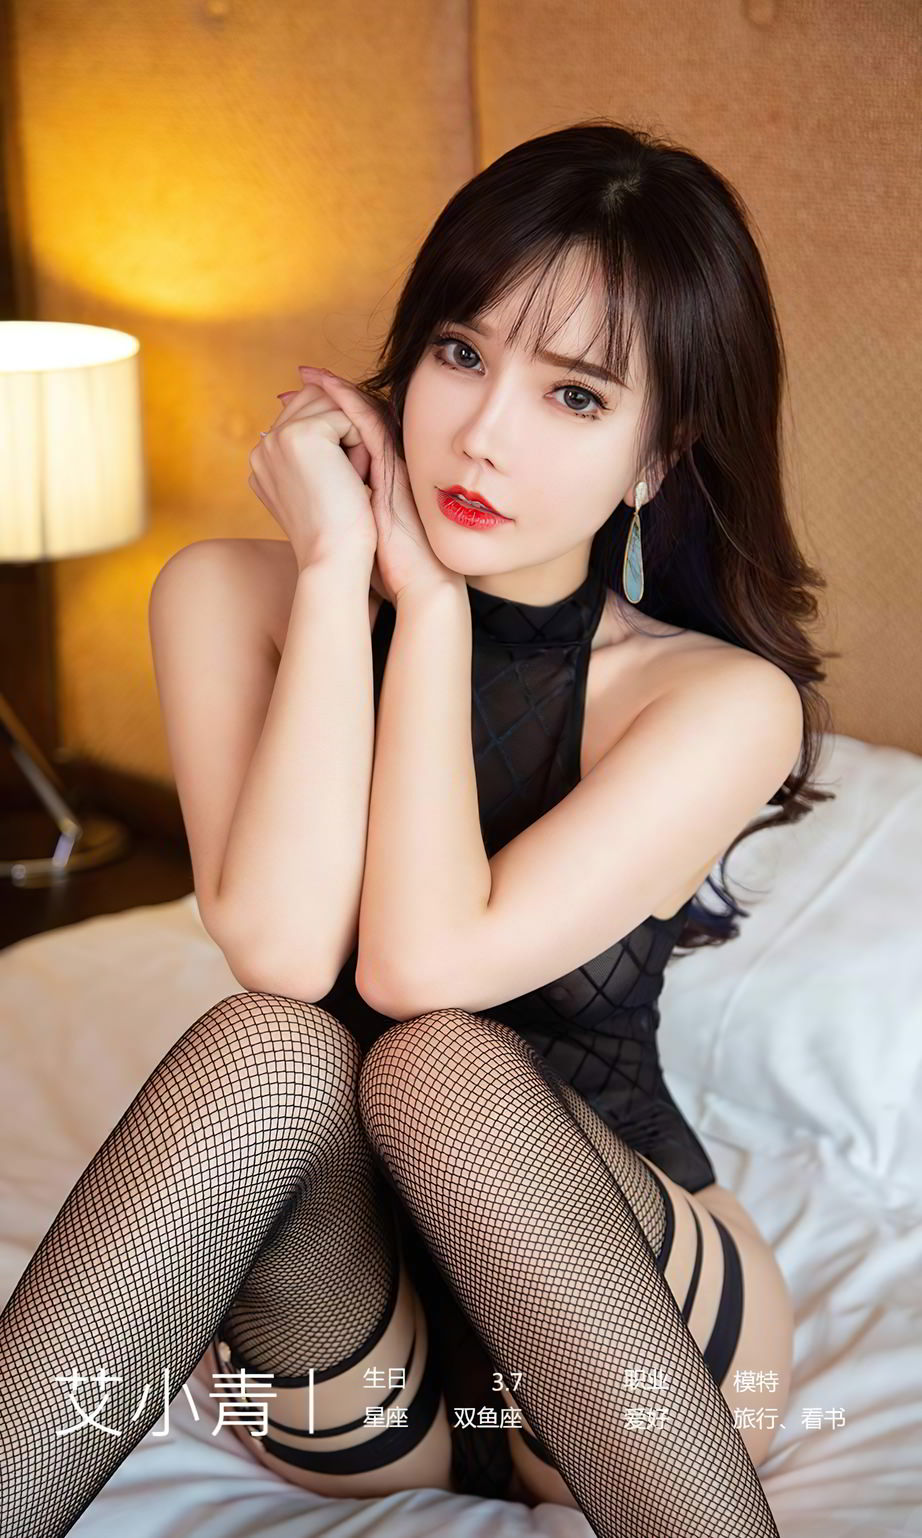 尤果圈美女模特艾小青黑丝网袜性感紧身衣翘臀系列写真